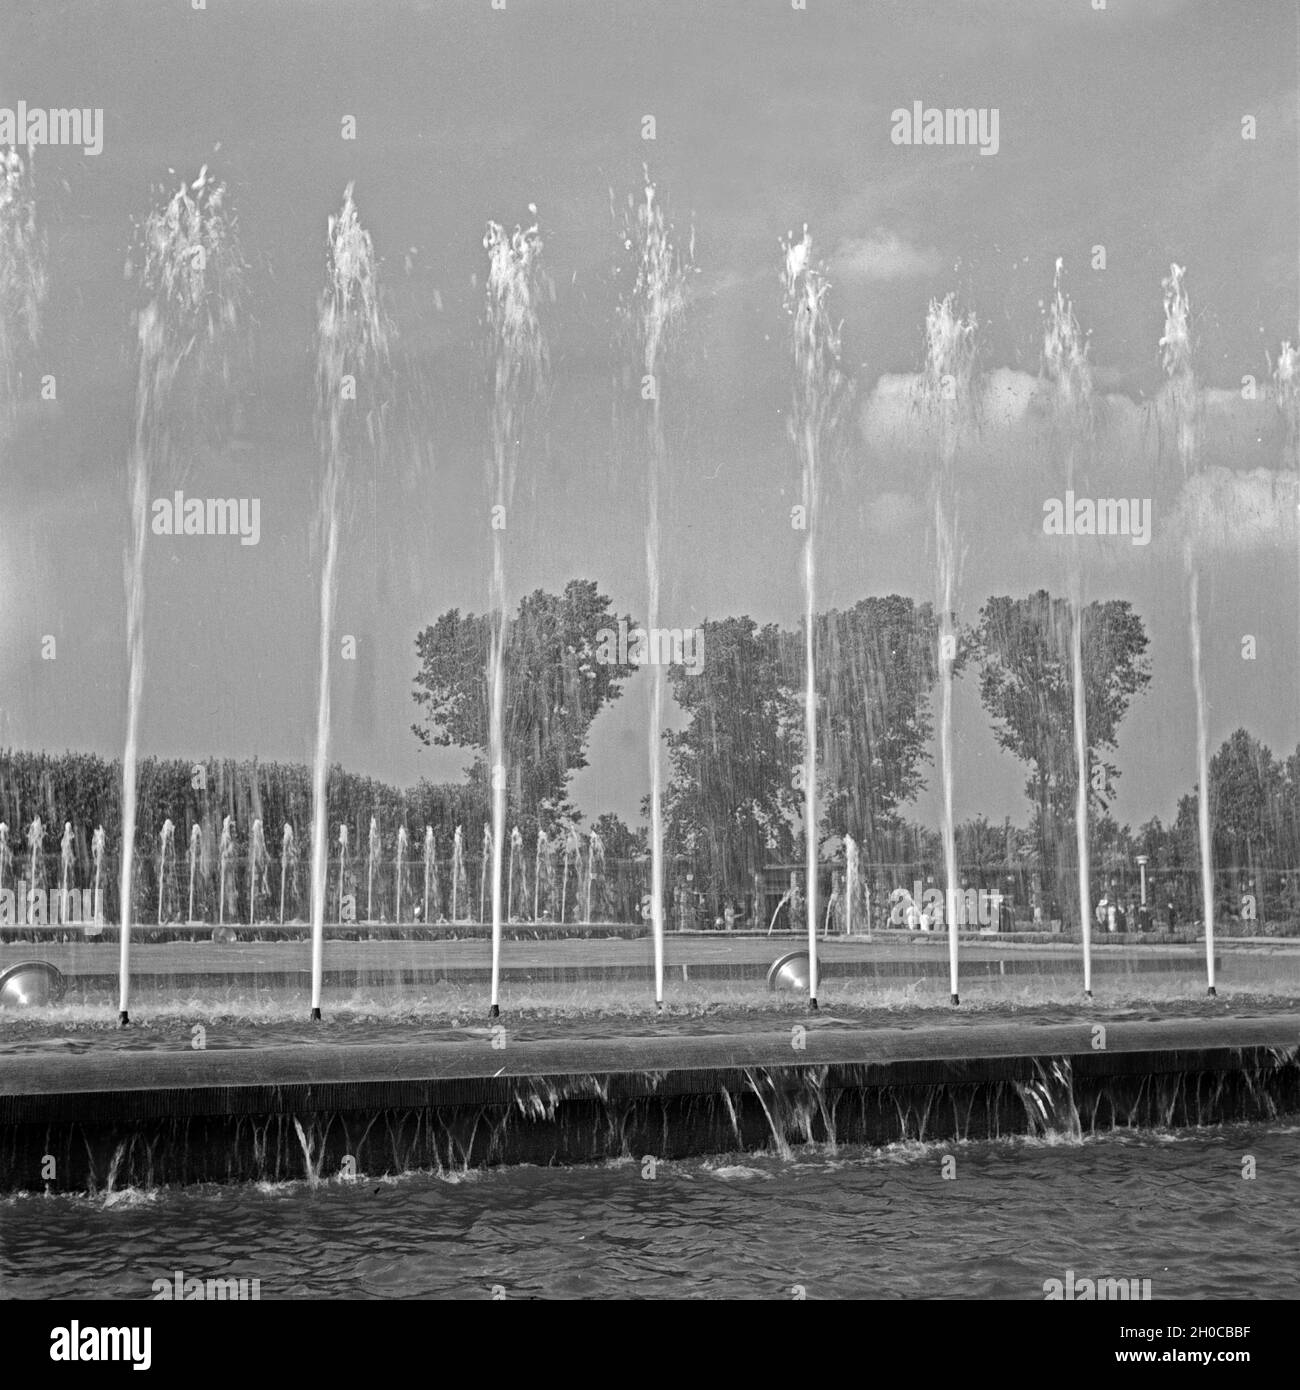 Wasserspiele im Grugapark in Essen, Deutschland 1930er Jahre. Trick fountains at Grugapark gardens in the city of Essen, Germany 1930s. Stock Photo